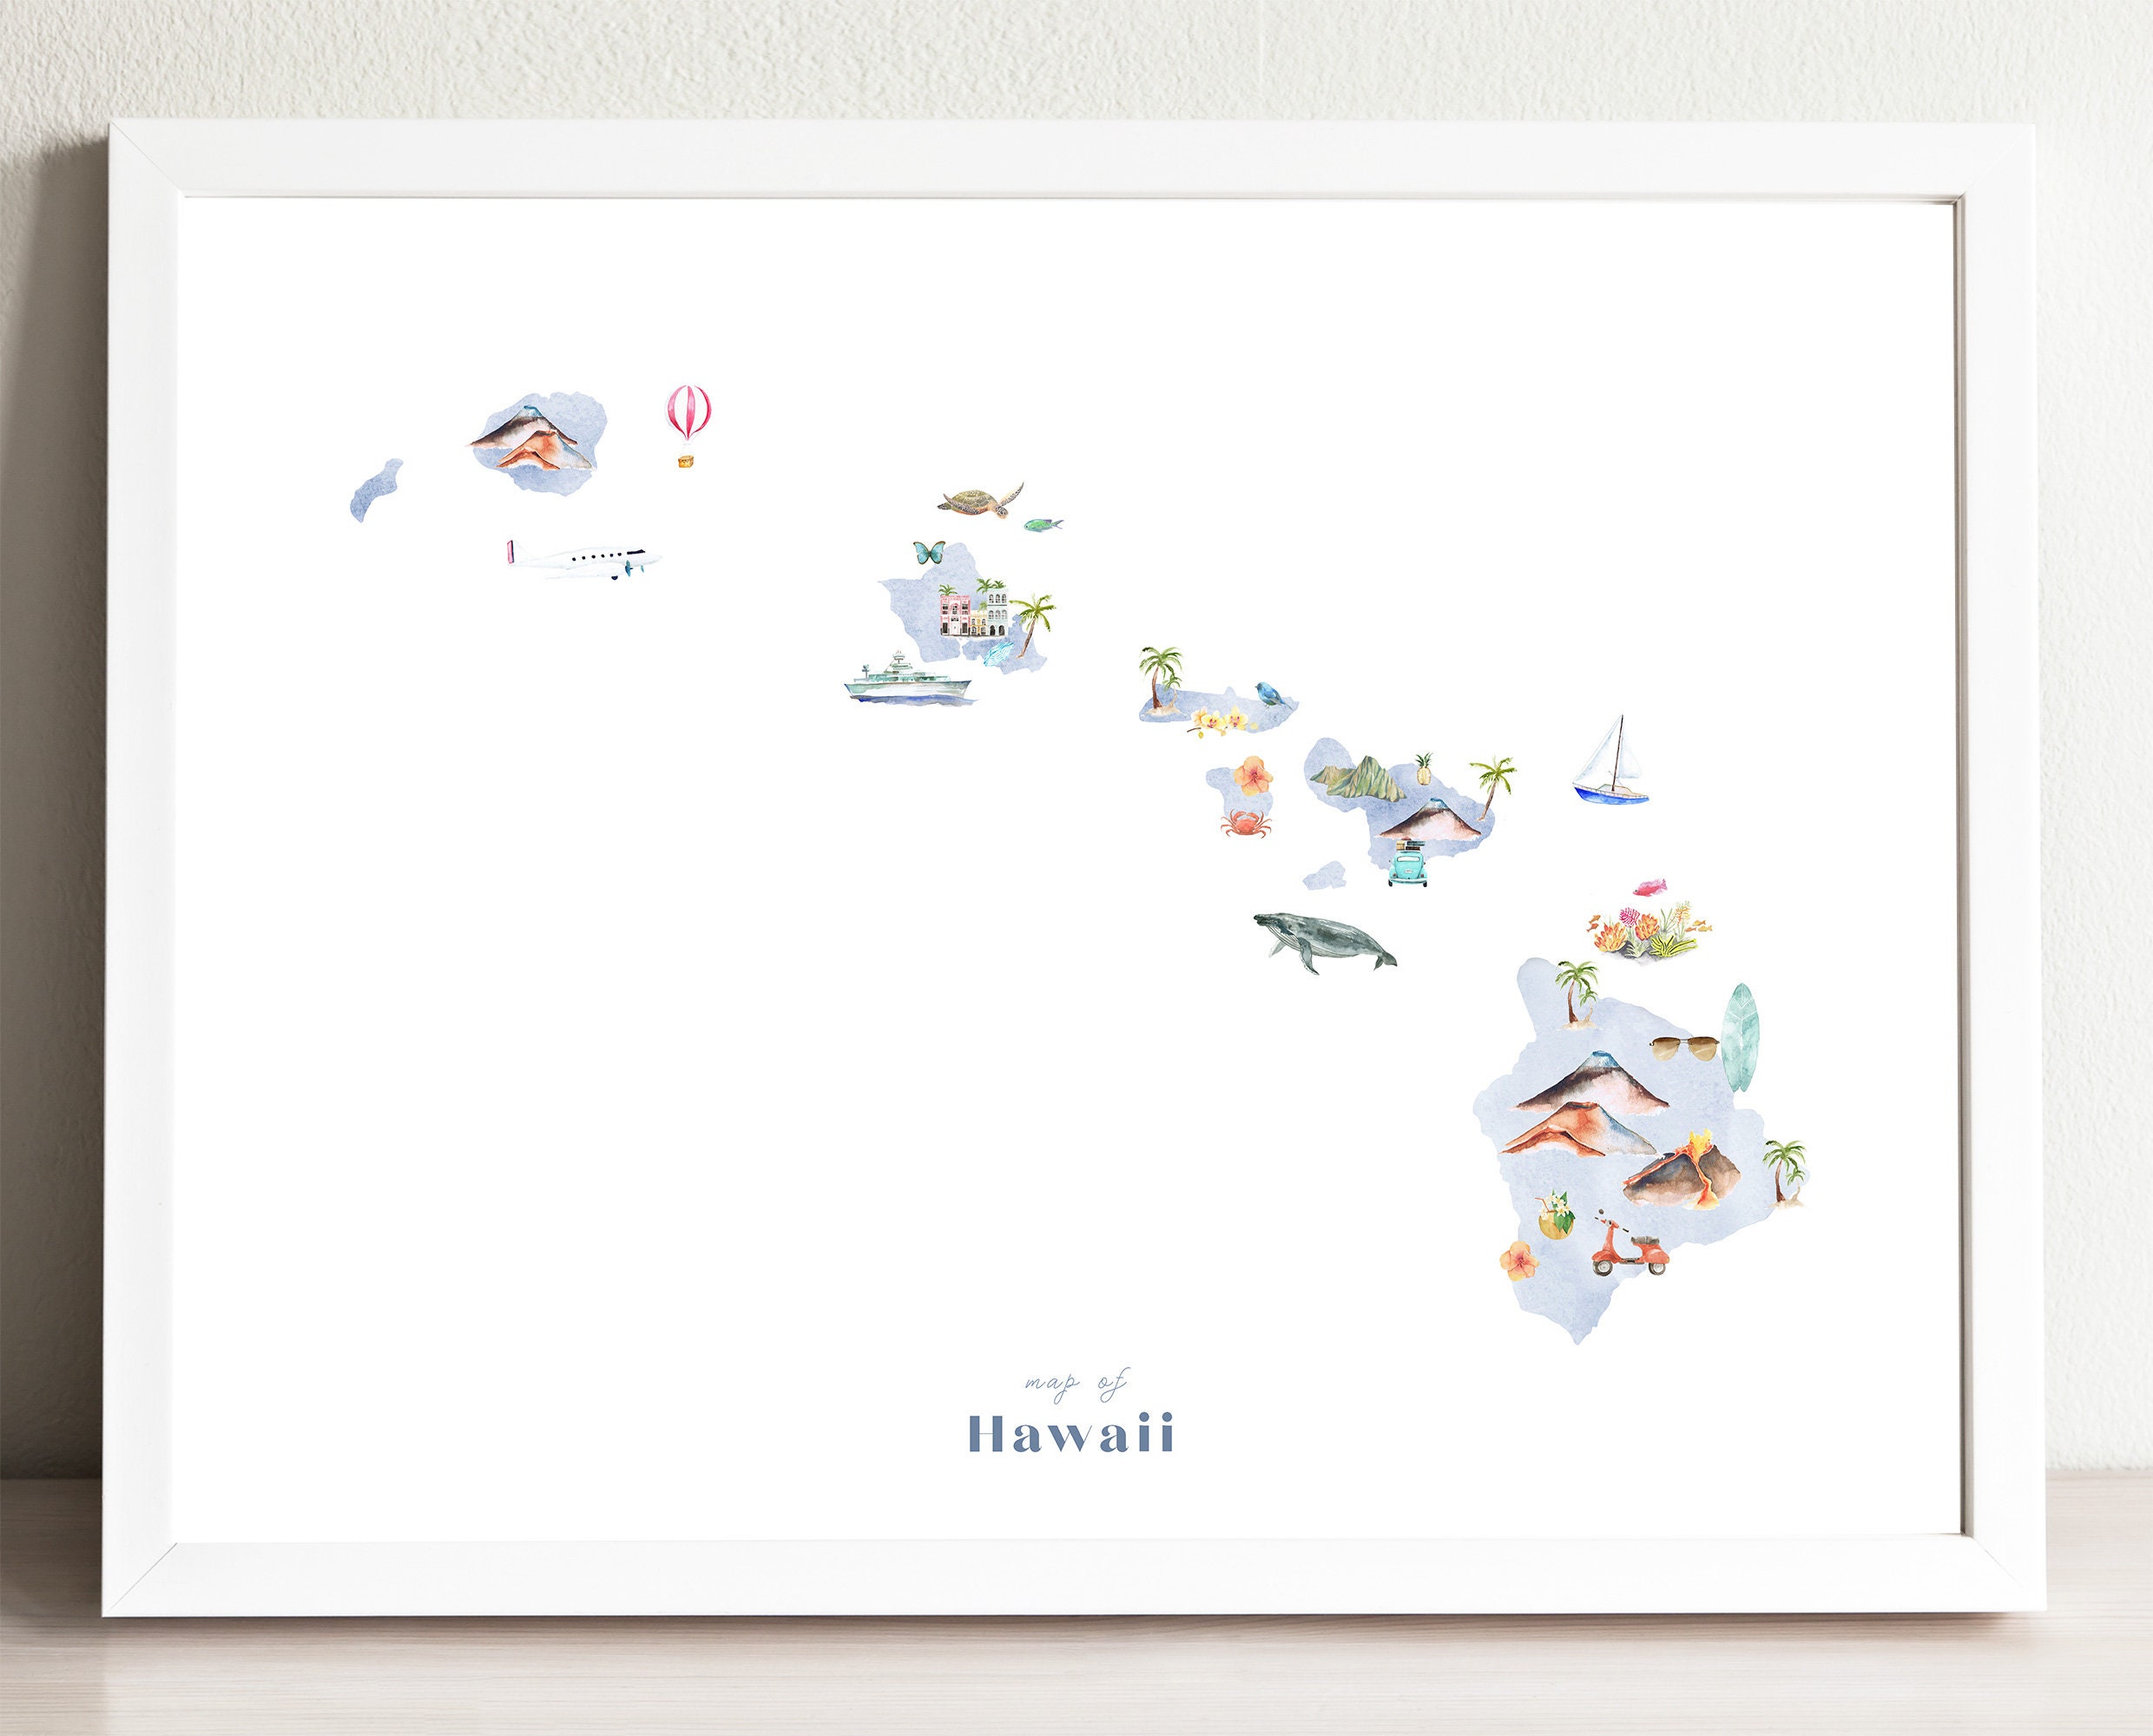 Weltkarte Hawaii - KibrisPDR